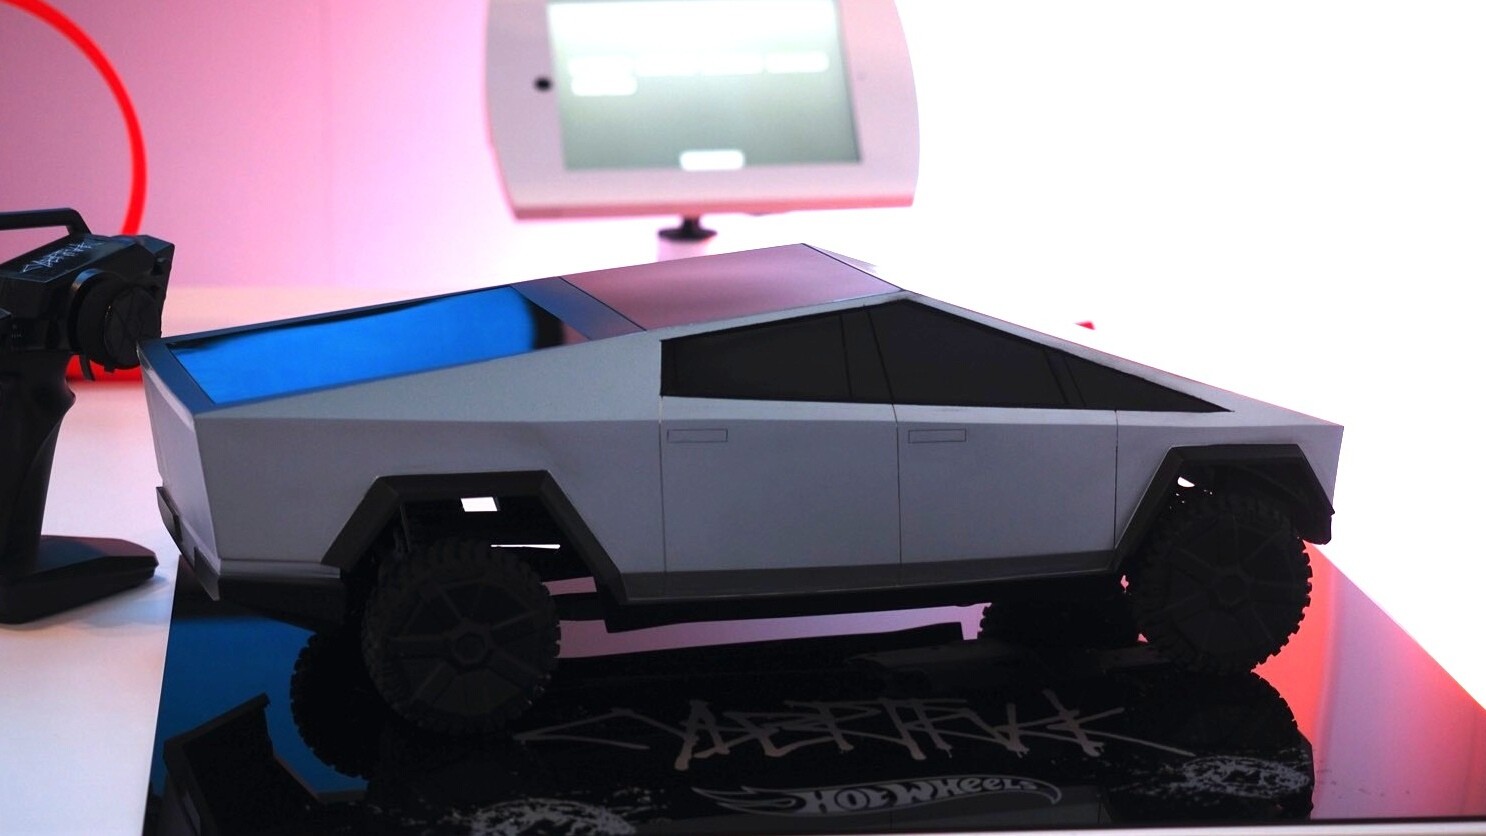 Hot Wheels представила игрушечный Tesla Cybertruck на радиоуправлении